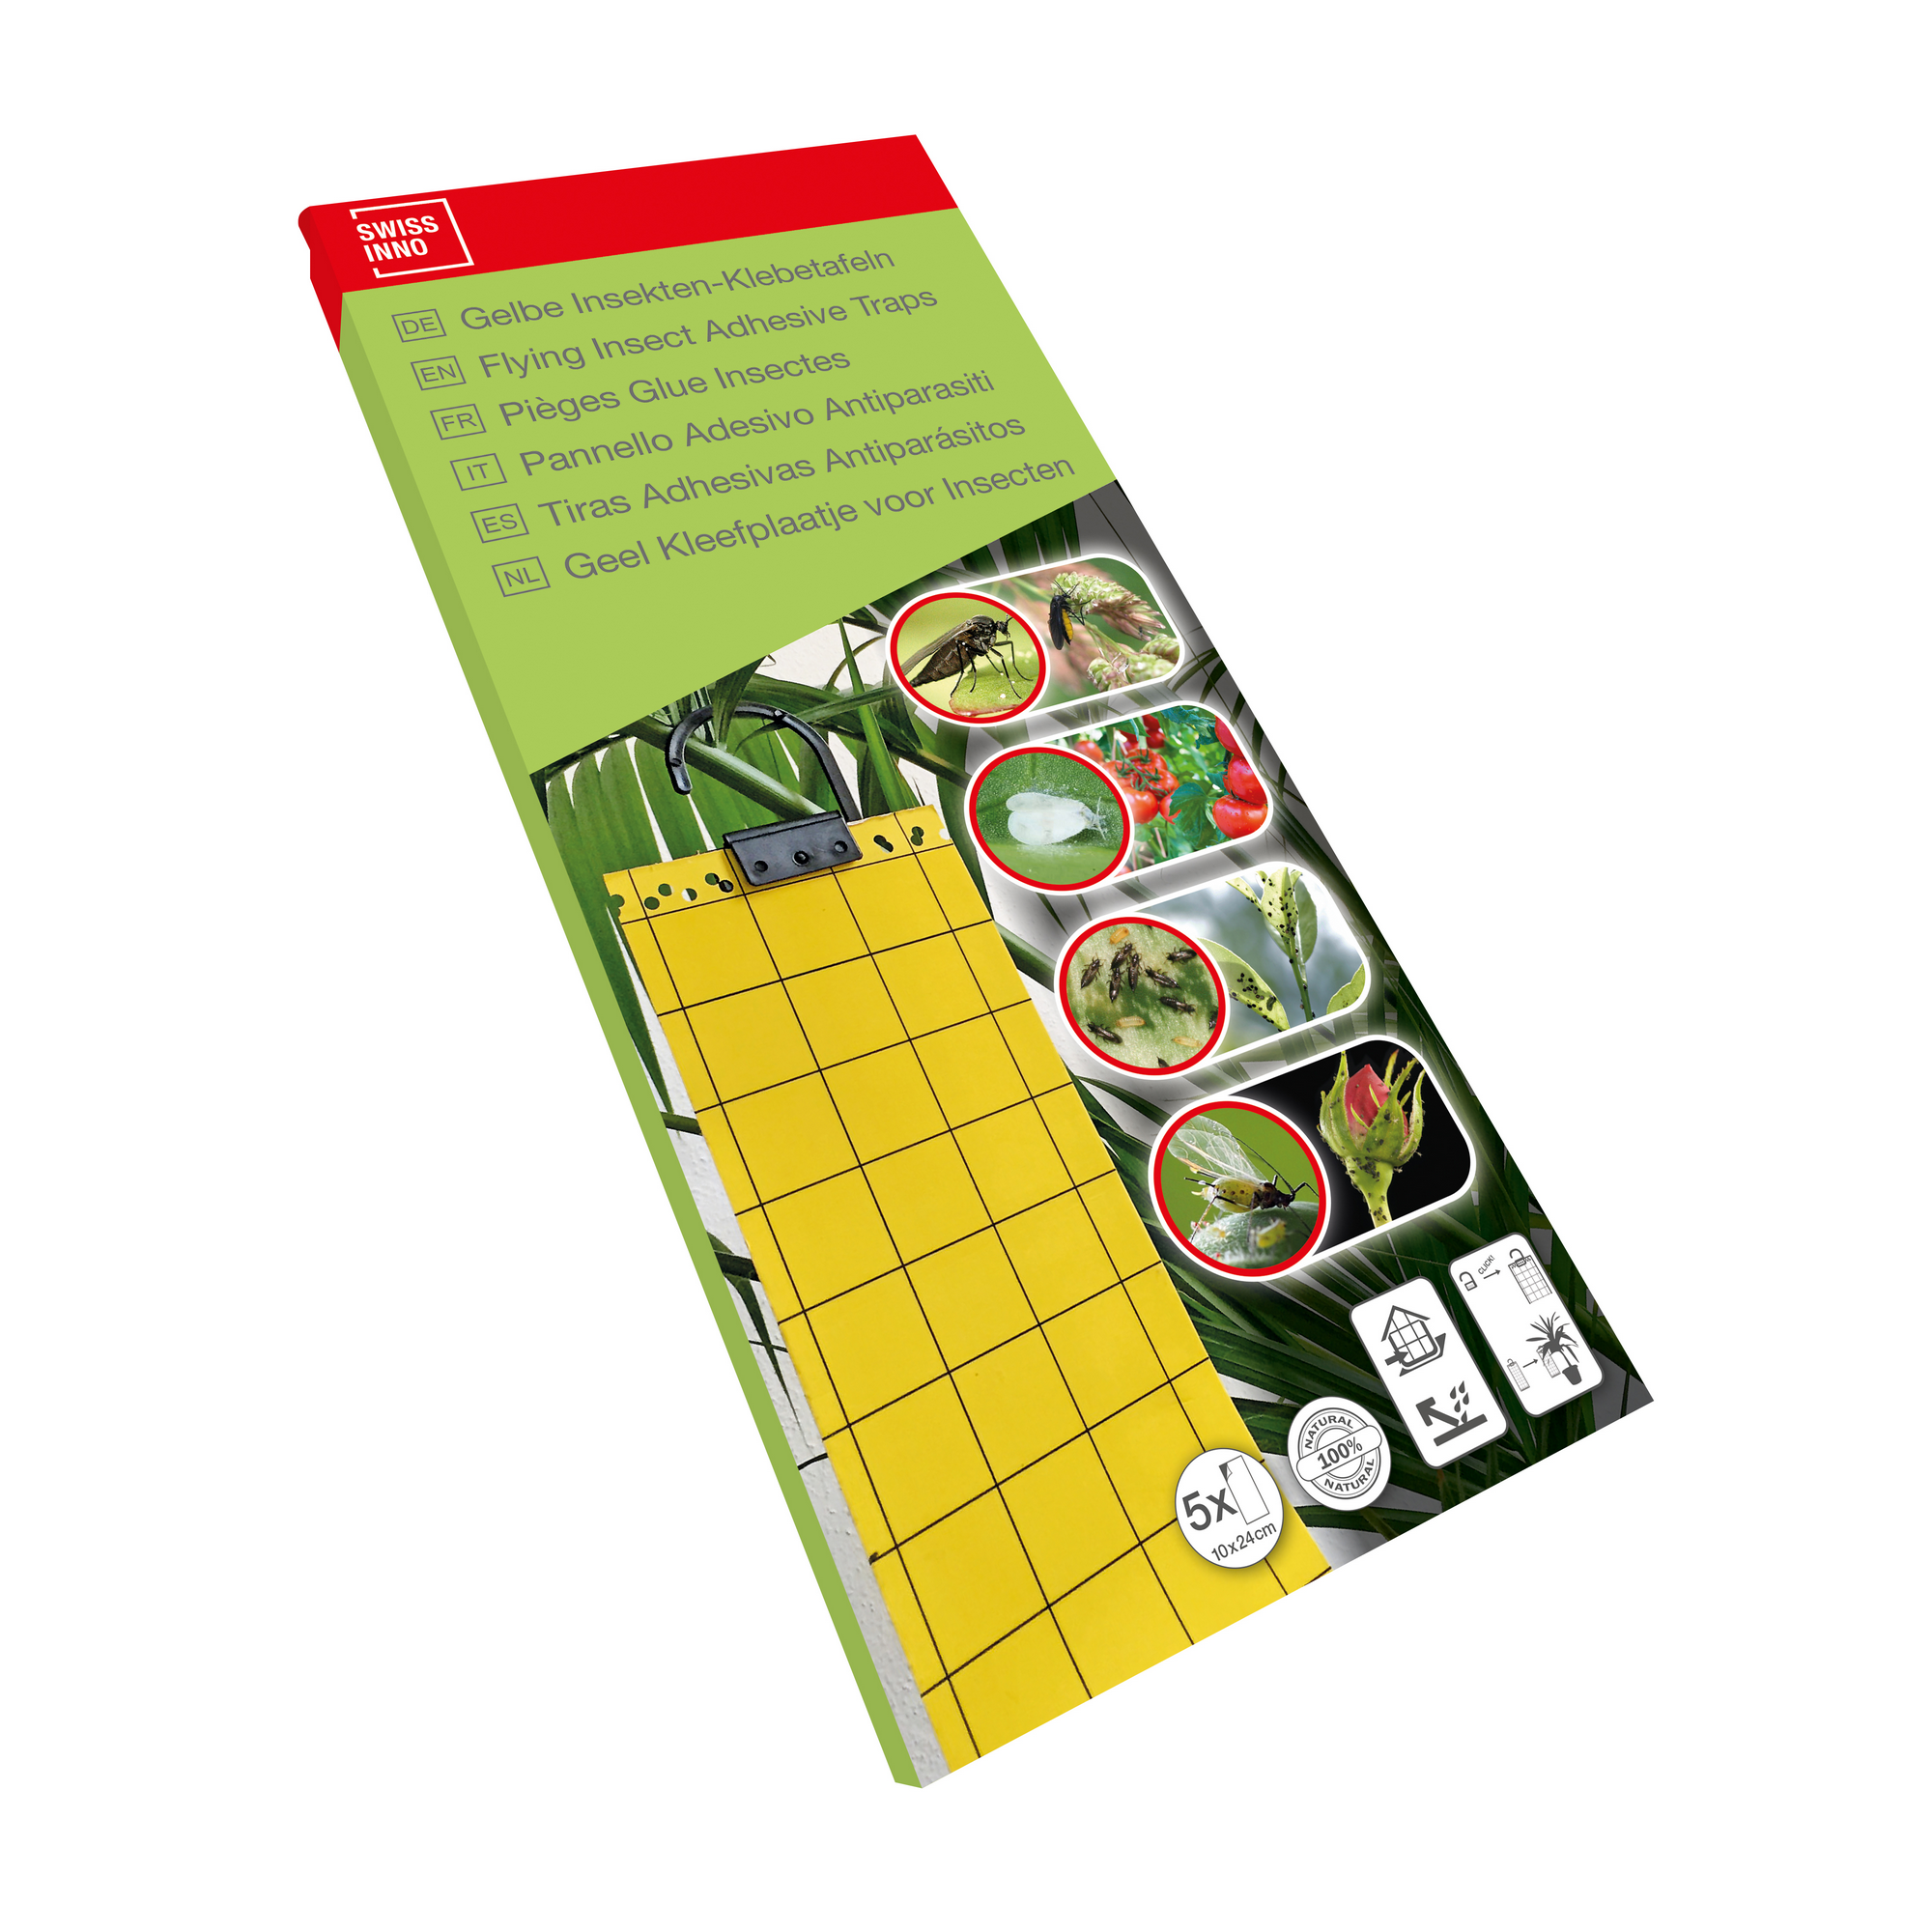 Insekten-Klebetafeln gelb 5 Stück + product picture